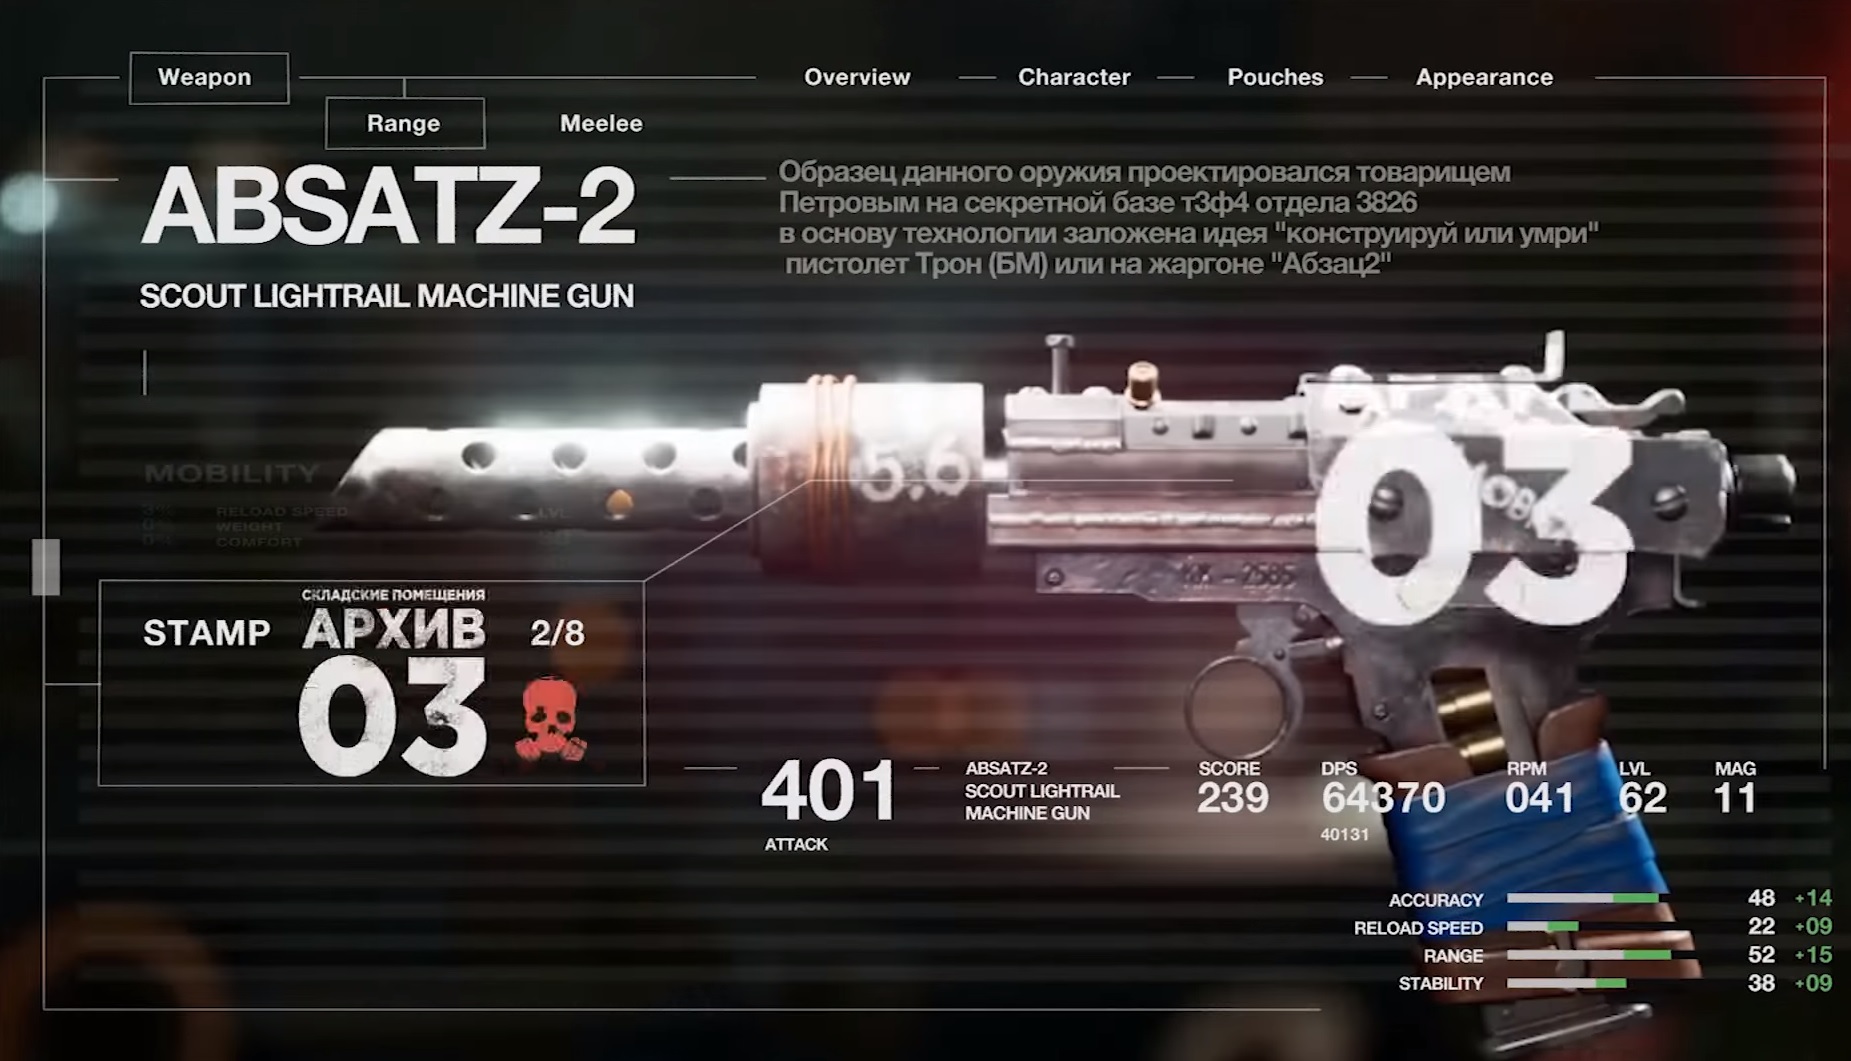 Atomic Heart - A machine gun pistol is shown with details